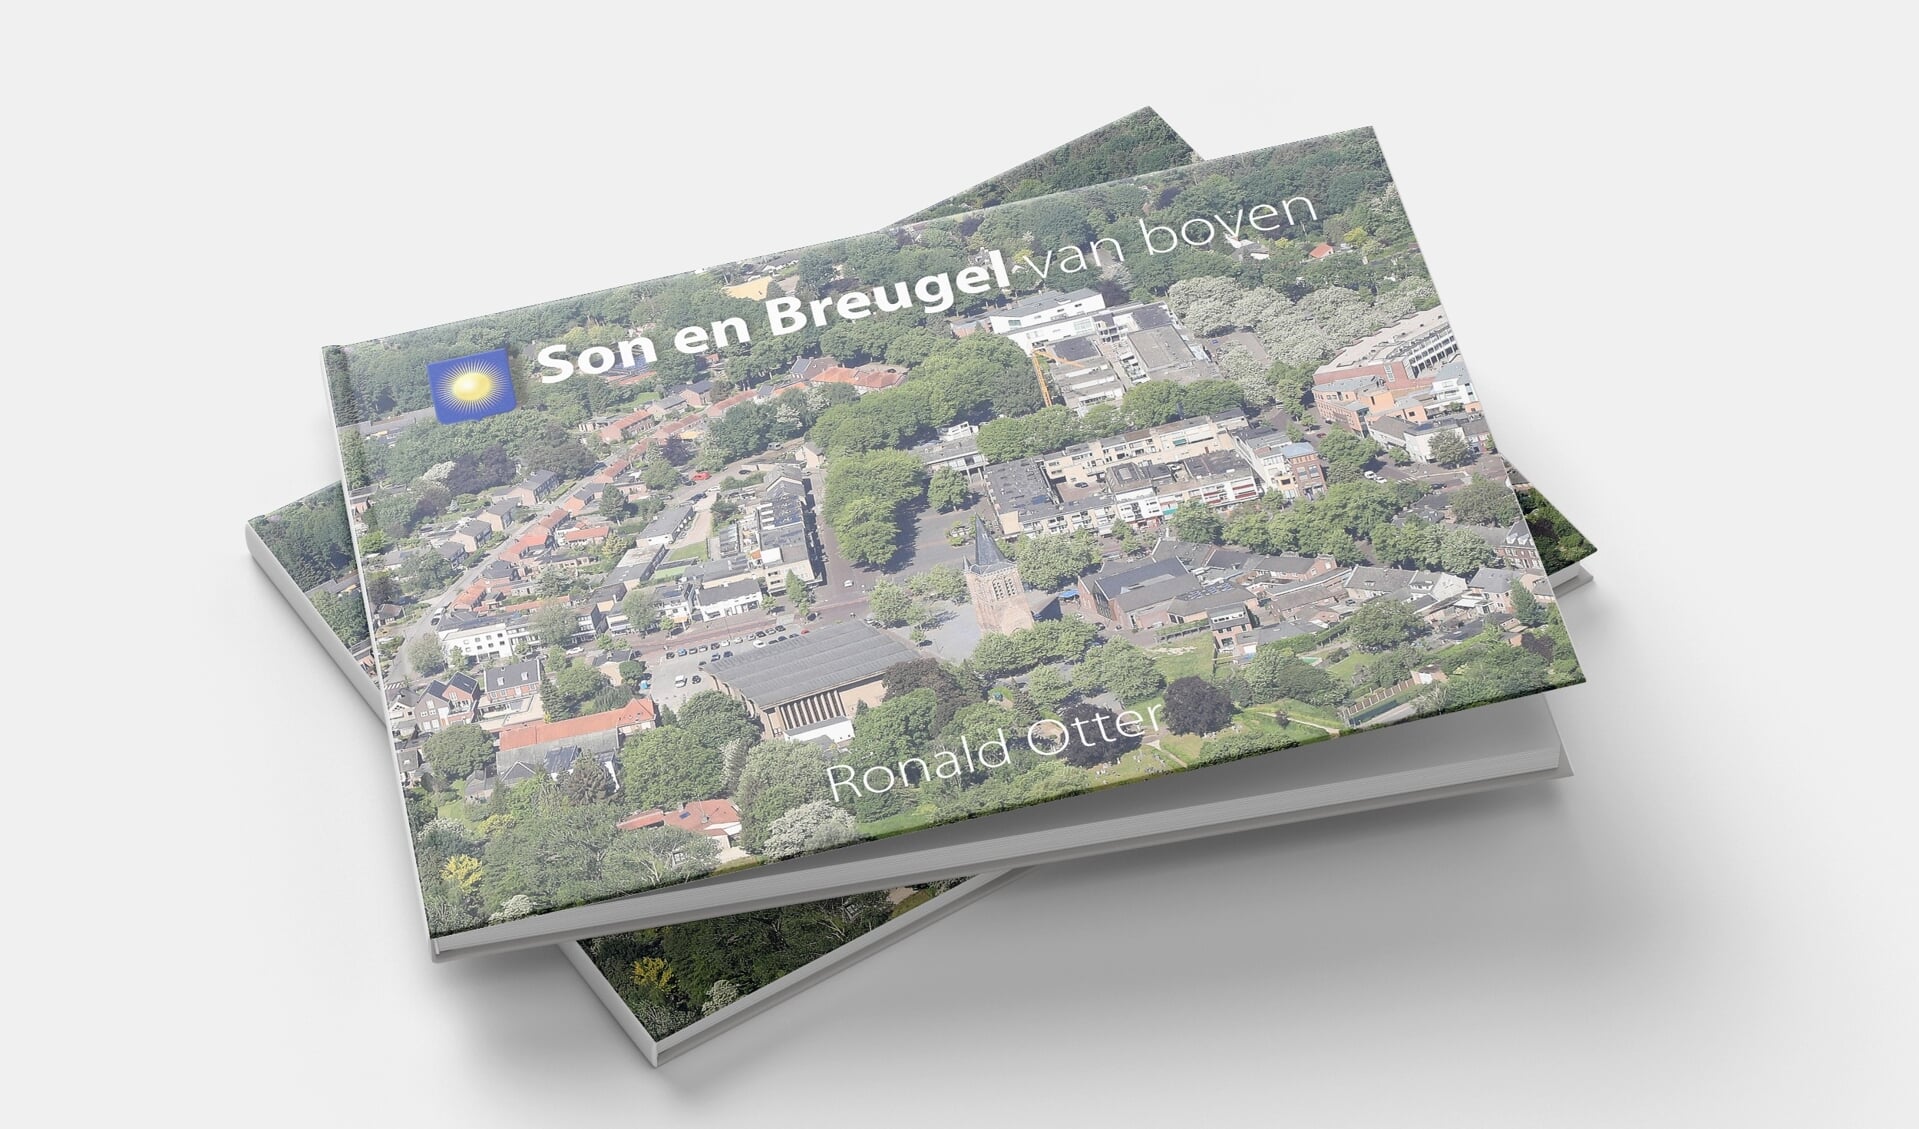 Het fotoboek van Son en Breugel vanuit de lucht